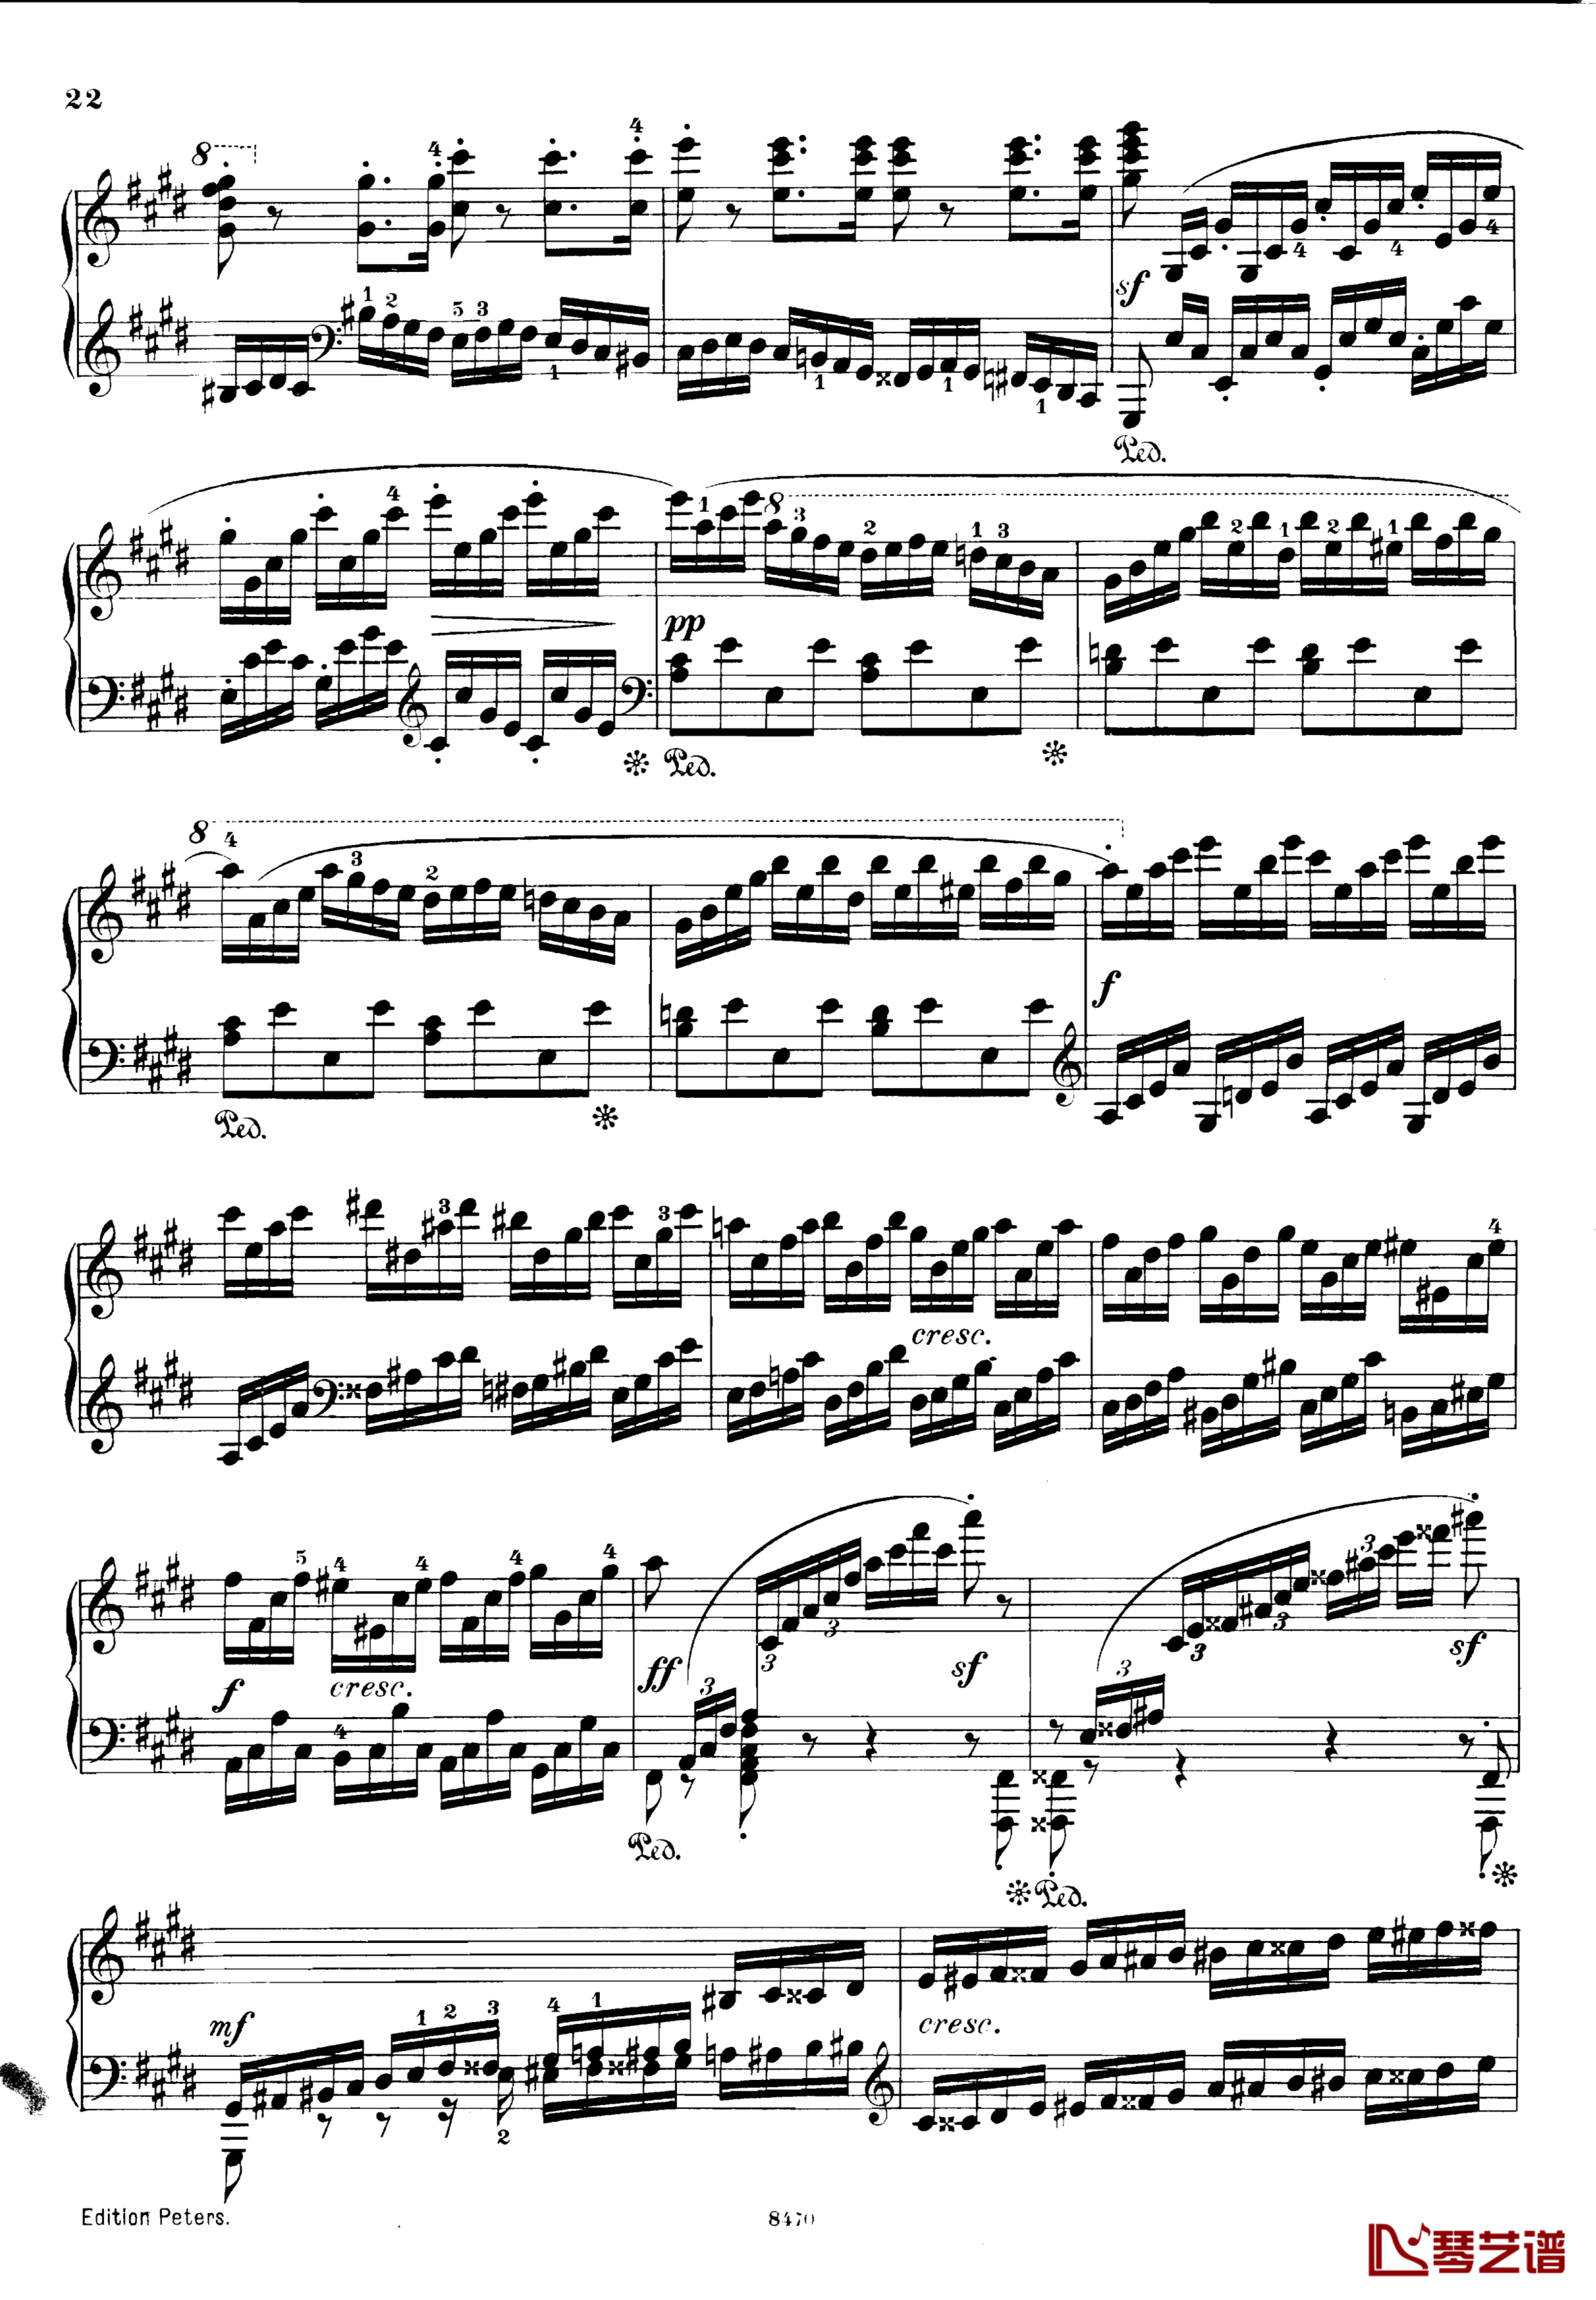 升c小调第三钢琴协奏曲Op.55钢琴谱-克里斯蒂安-里斯22